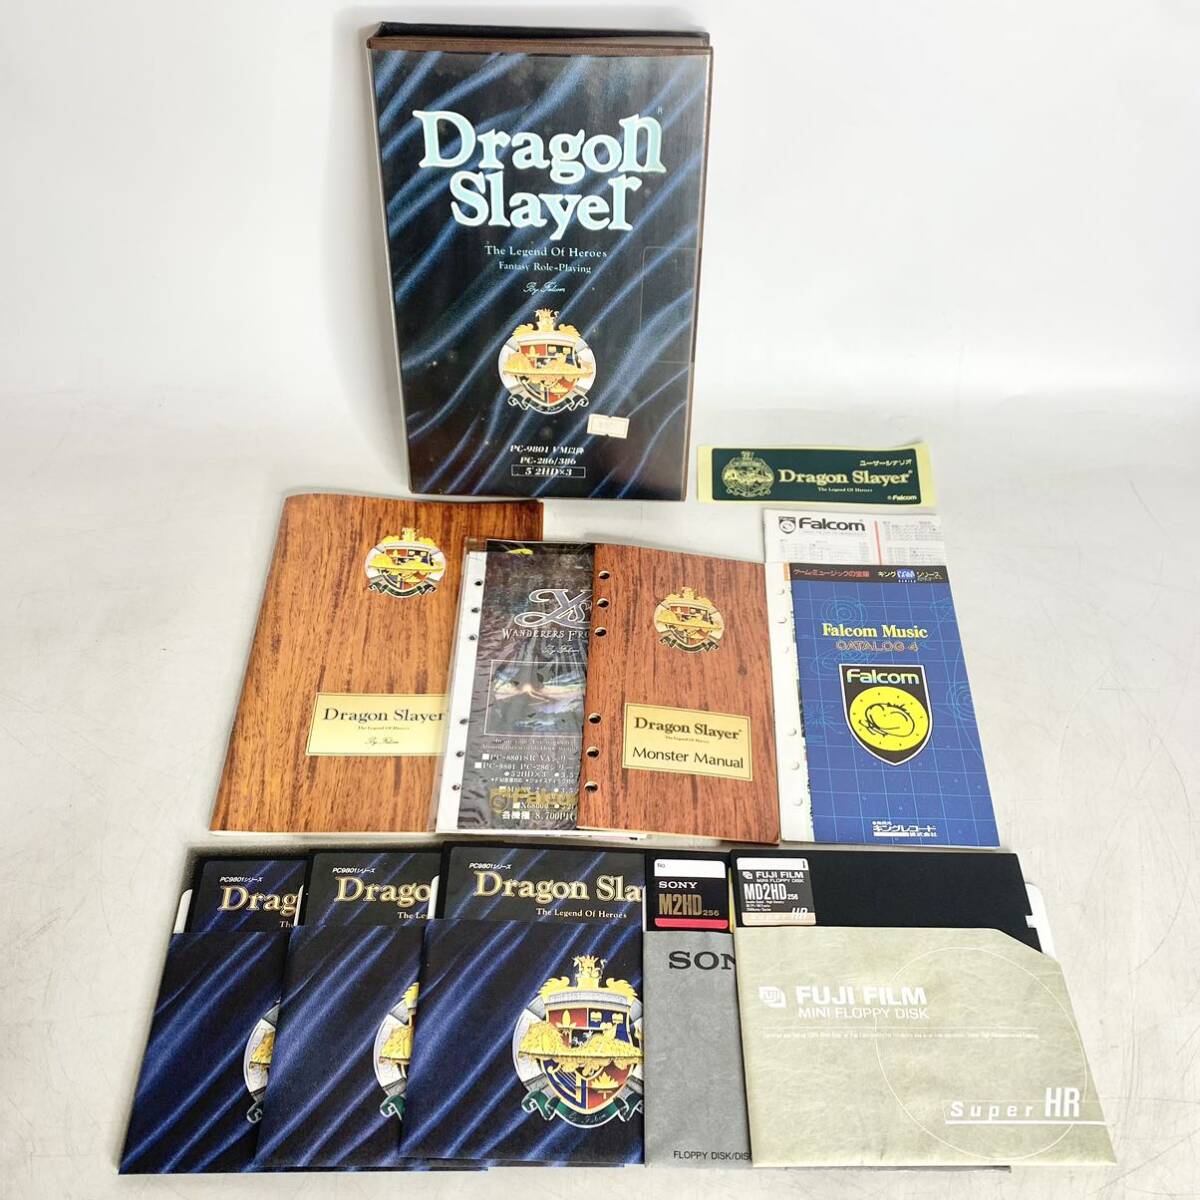 ドラゴンスレイヤー 英雄伝説 PC-9801 5インチ 2HD ×3 レトロ ゲーム Dragon Slayer ファルコム Falcom 現状品の画像1